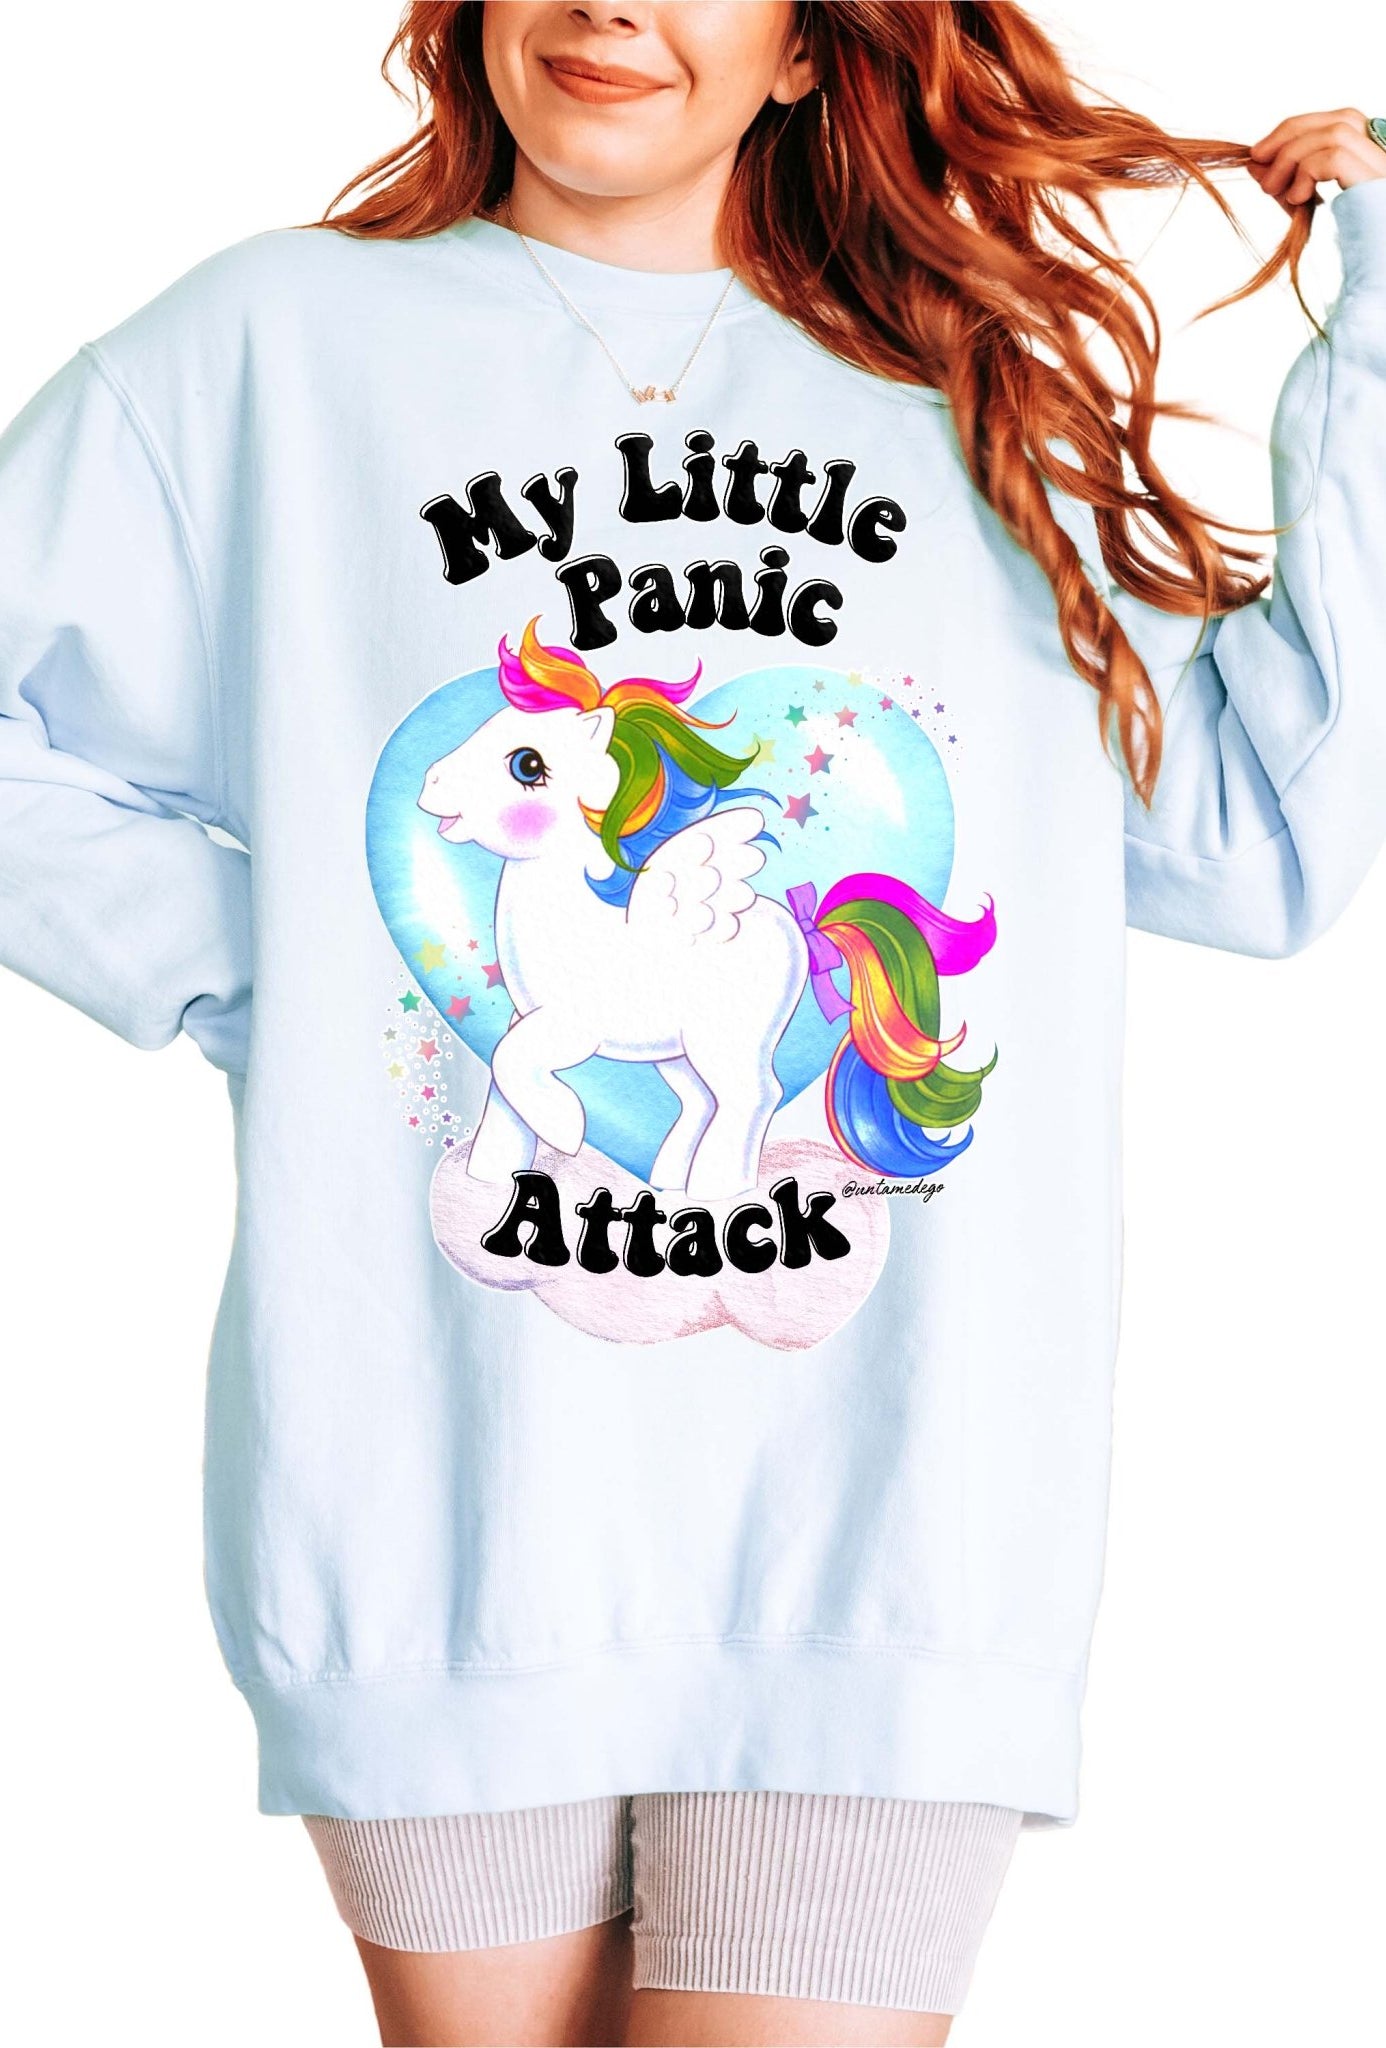 My Little Panic Attack Crew Sweatshirt - UntamedEgo LLC.